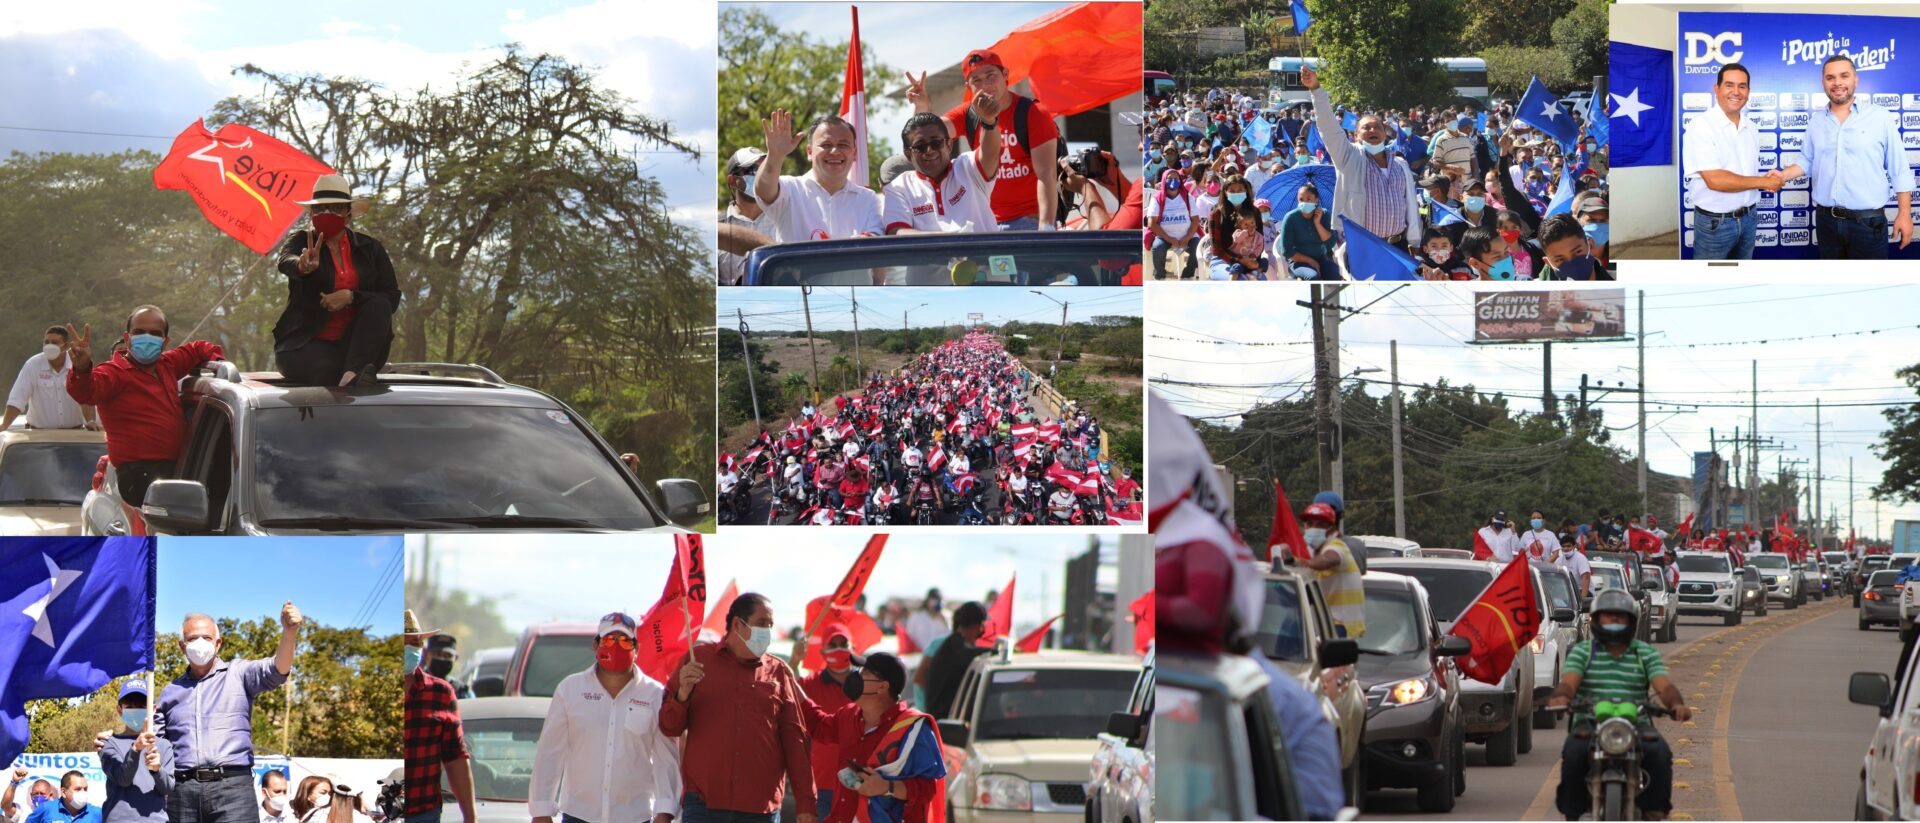 Arranca Oficialmente La Campaña Electoral Para Elecciones Primarias En Honduras Proceso Digital 9618